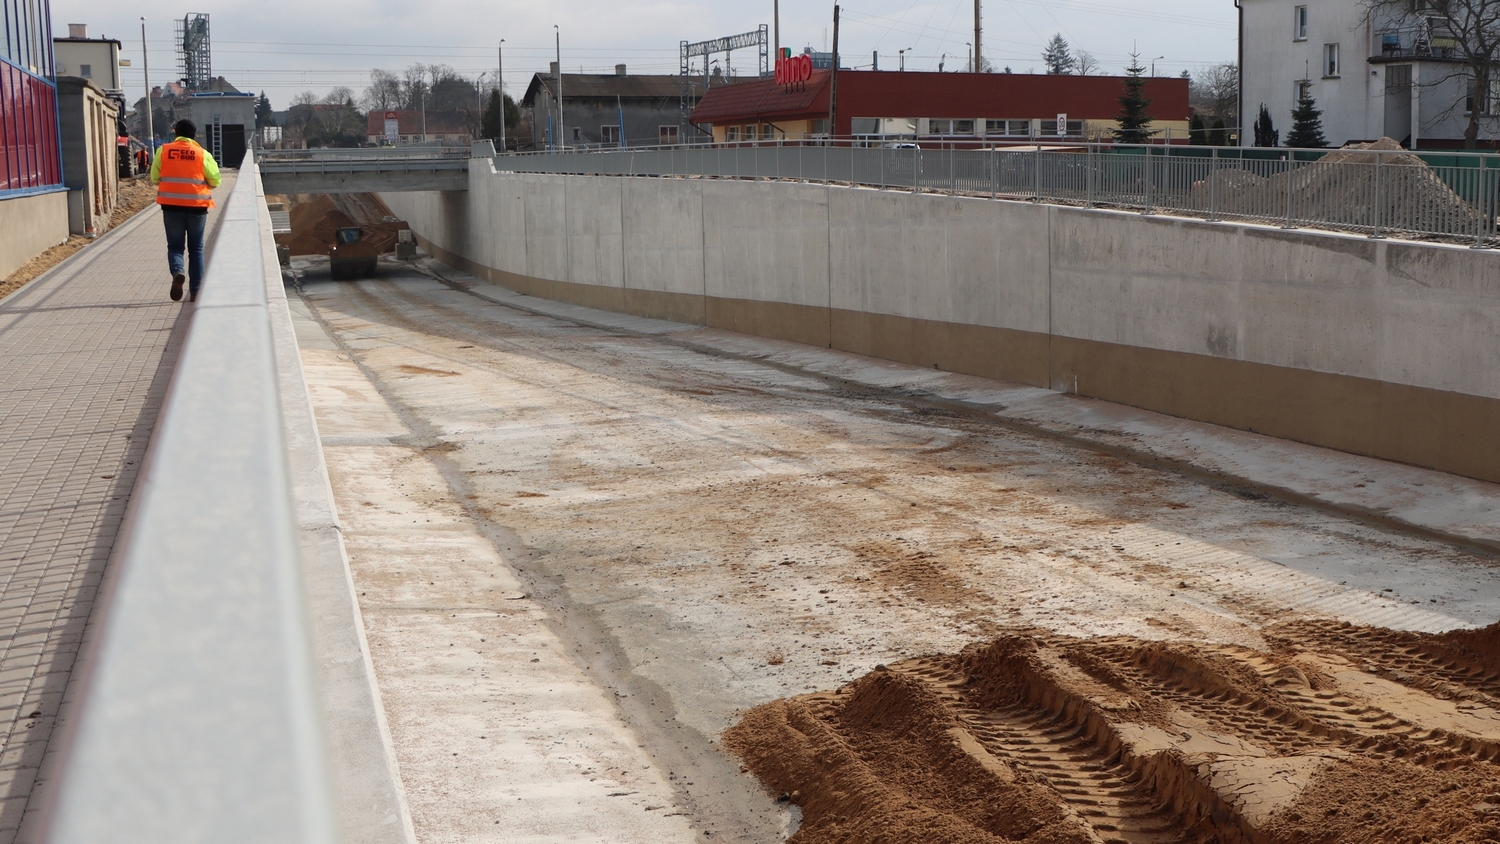 Nie skończyli w 2020 roku budowy tunelu do Masłowa przez gminę Rawicz? Komentarz PKP PLK - Zdjęcie główne